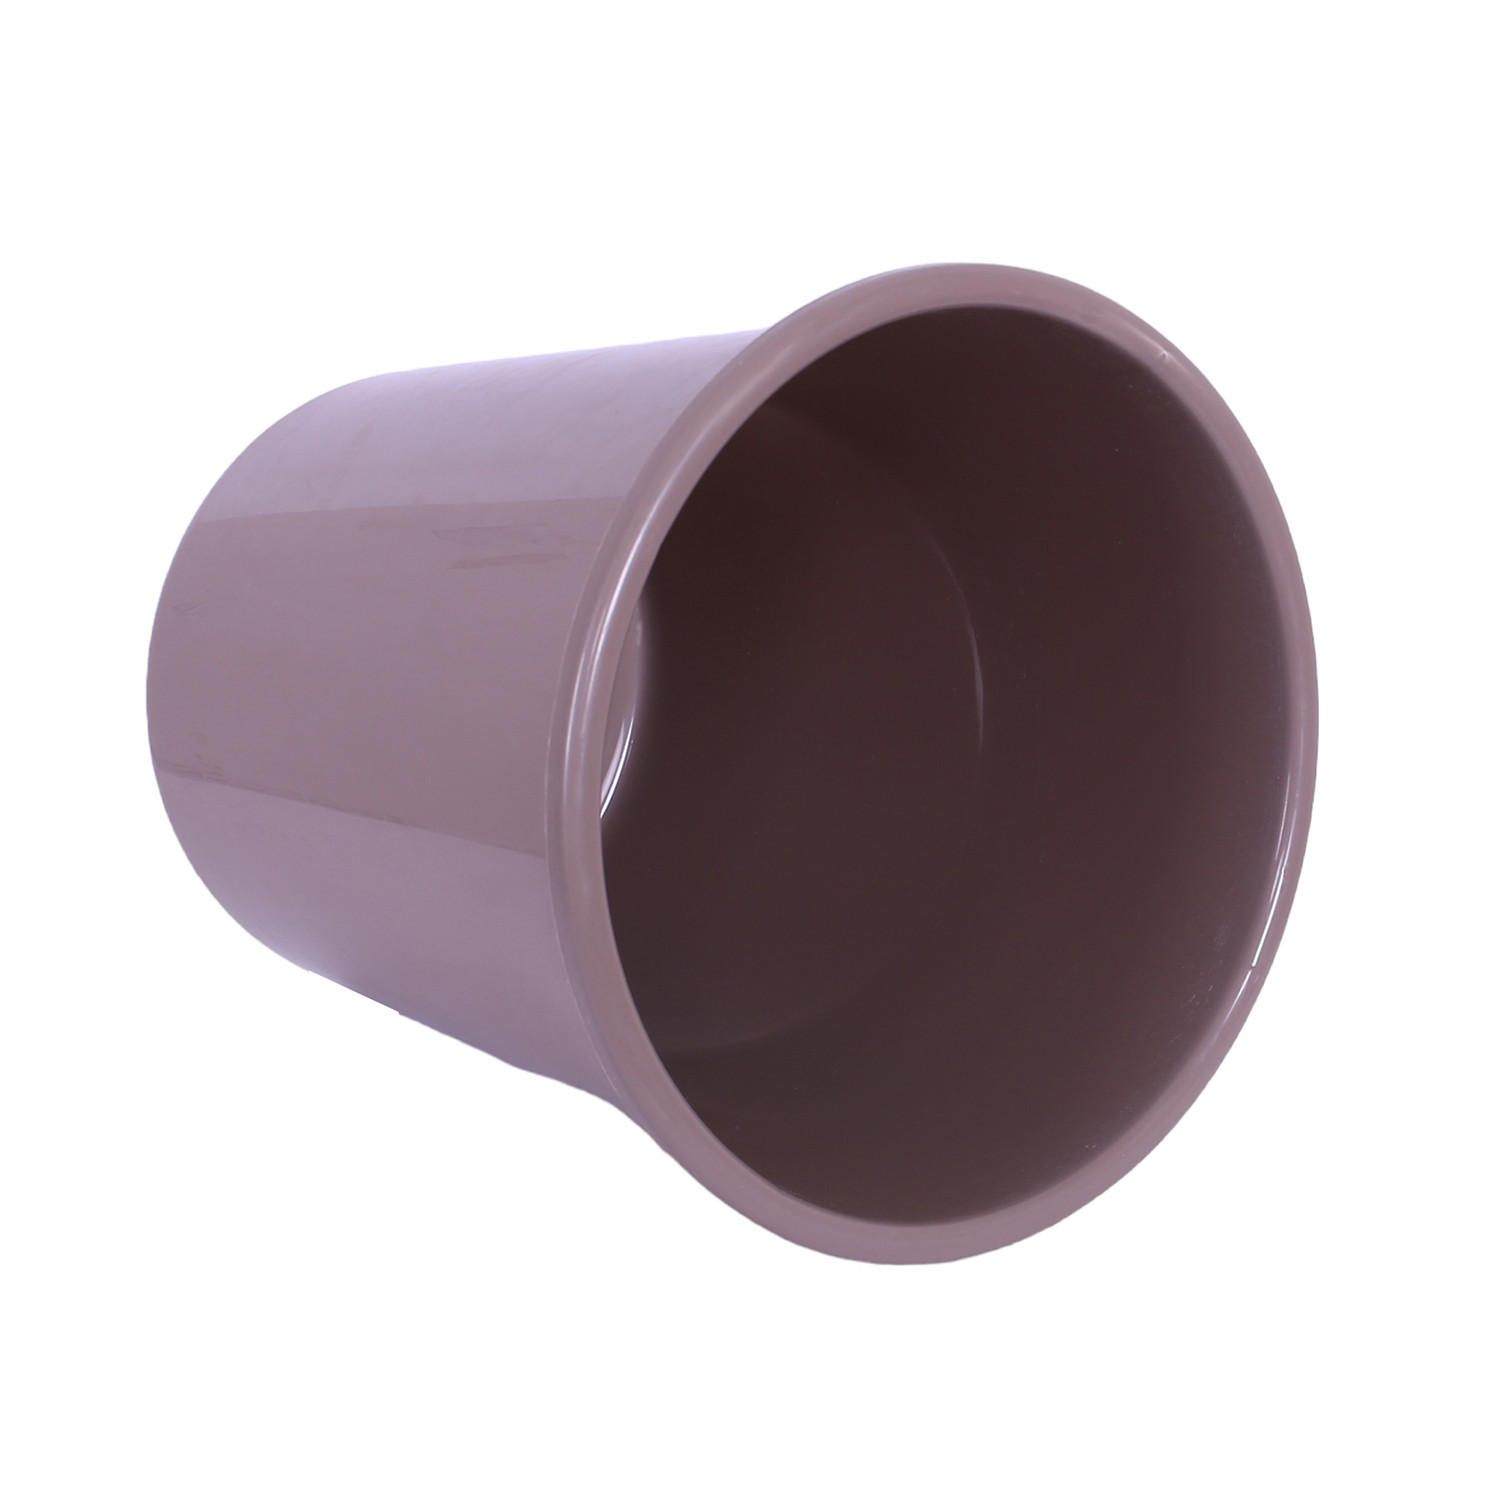 Kuber Industries Dustbin | Open Dustbin | Plastic Garbage Dustbin | Dustbin For Kitchen | Dustbin For Bathroom | Office Dustbin | Plain Sada Dustbin | 7 LTR | 066 | Pack of 3 | Multi